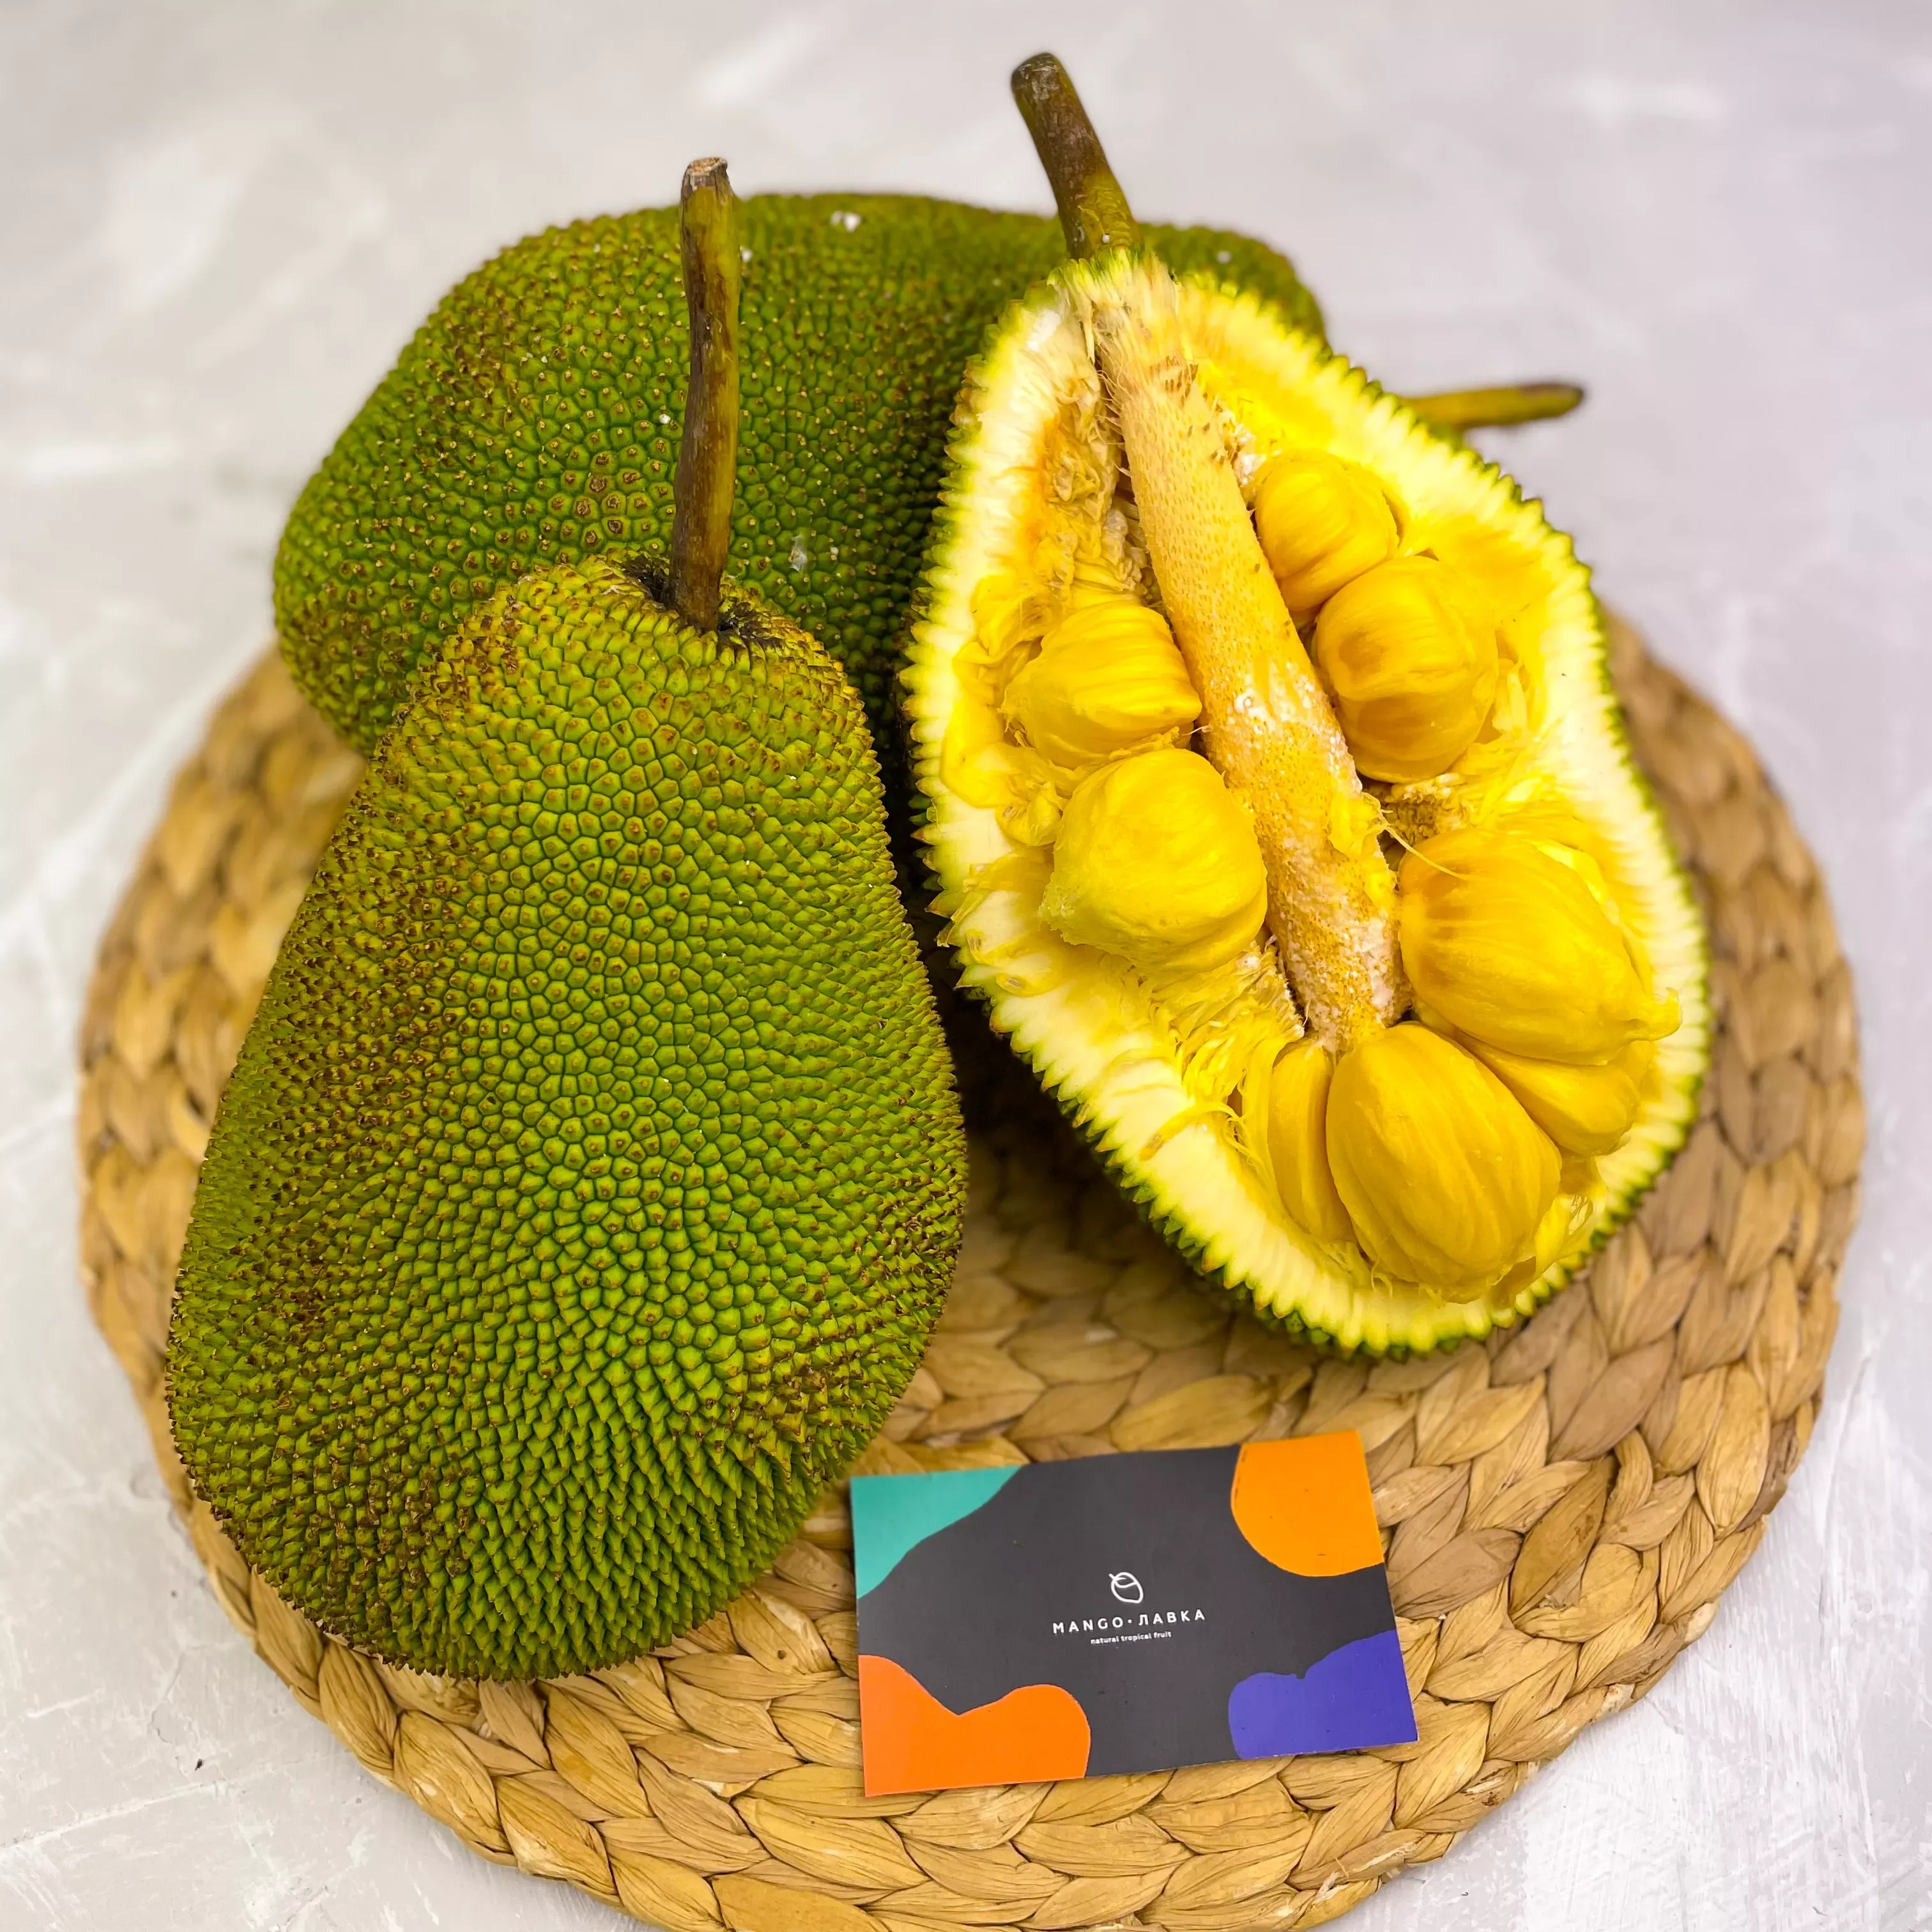 желтый фрукт с большой косточкой из тайланда название